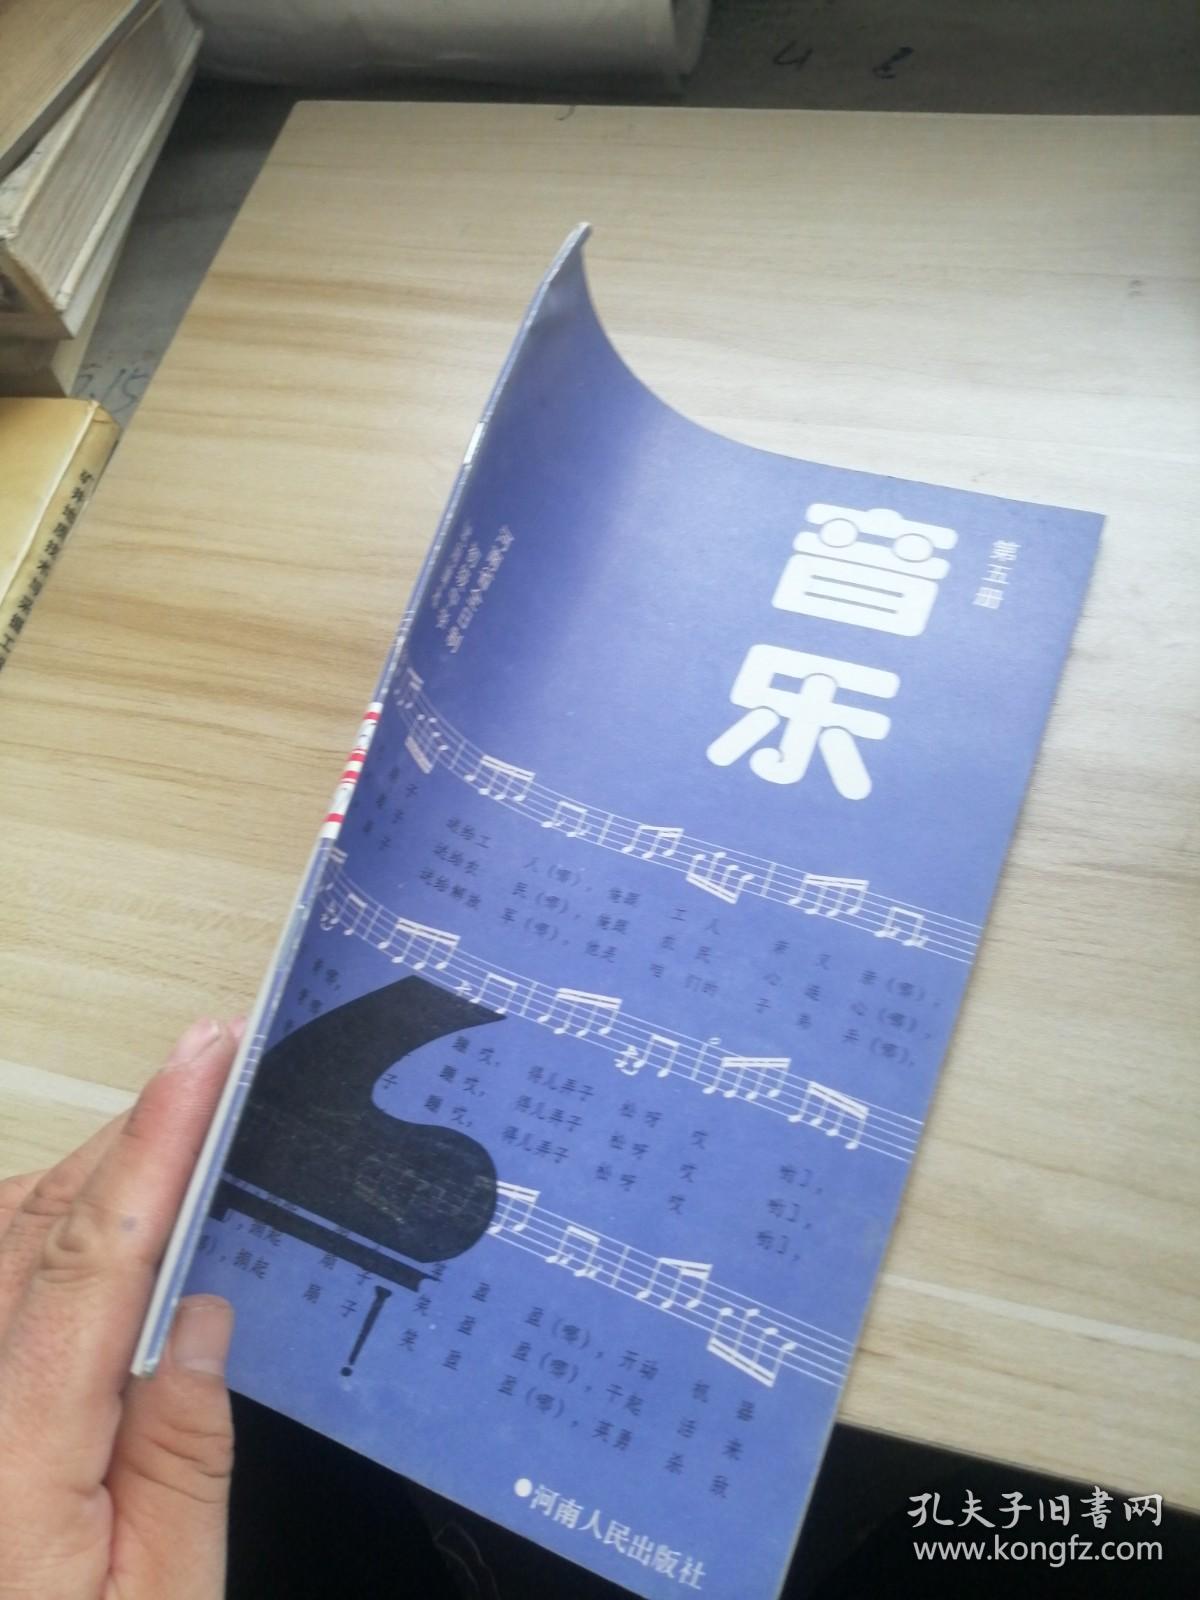 河南省全日制初级中学试用课本 音乐第五册